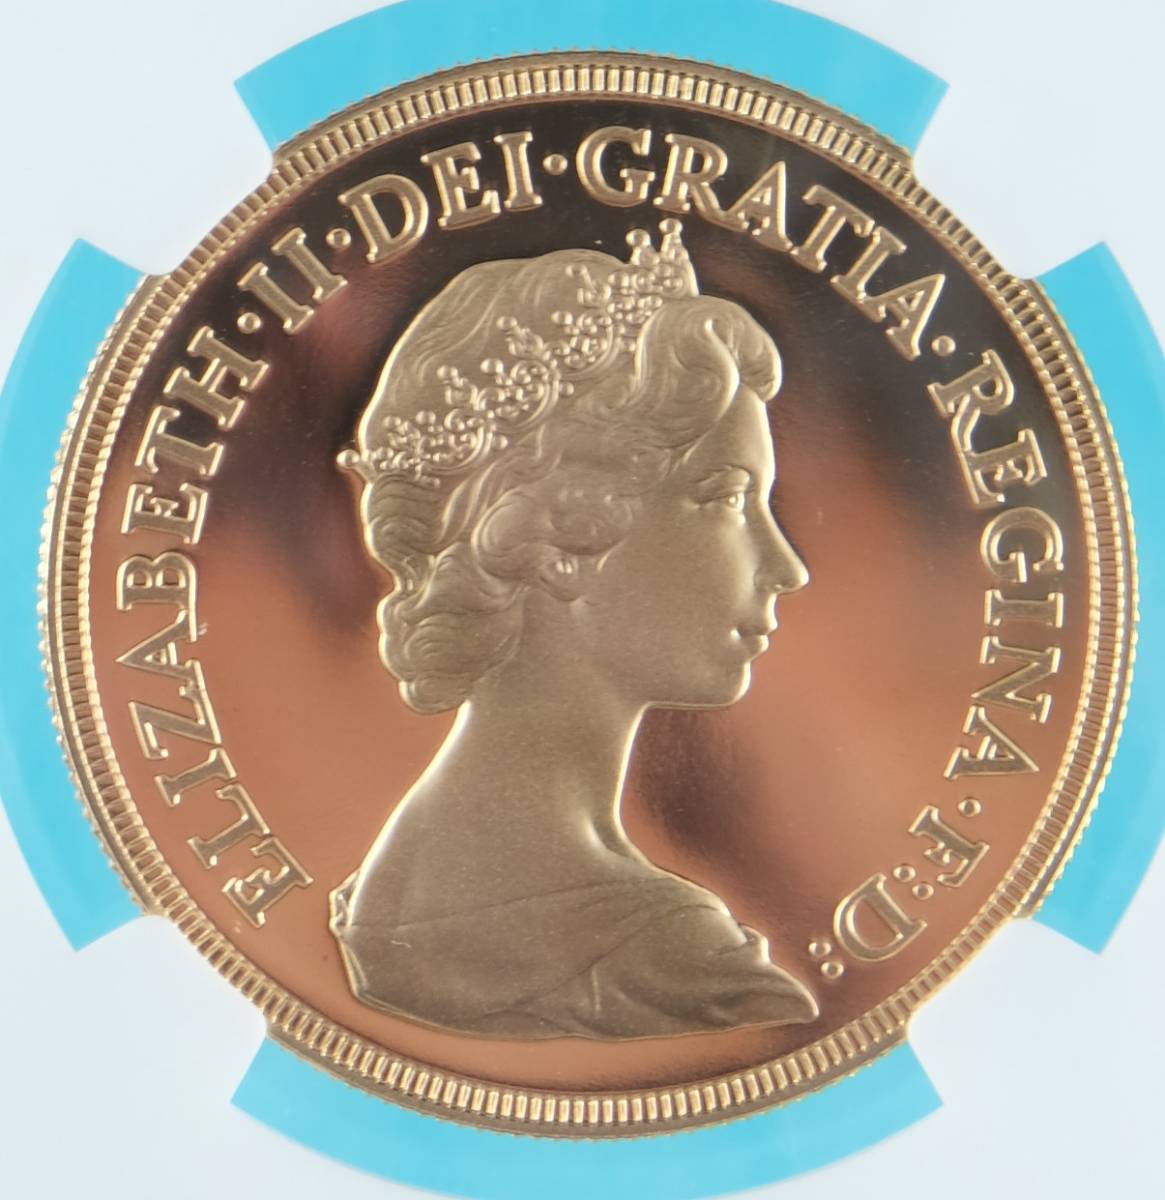 1980 イギリス 5ポンド・プルーフ金貨 エリザベス女王 準最高鑑定